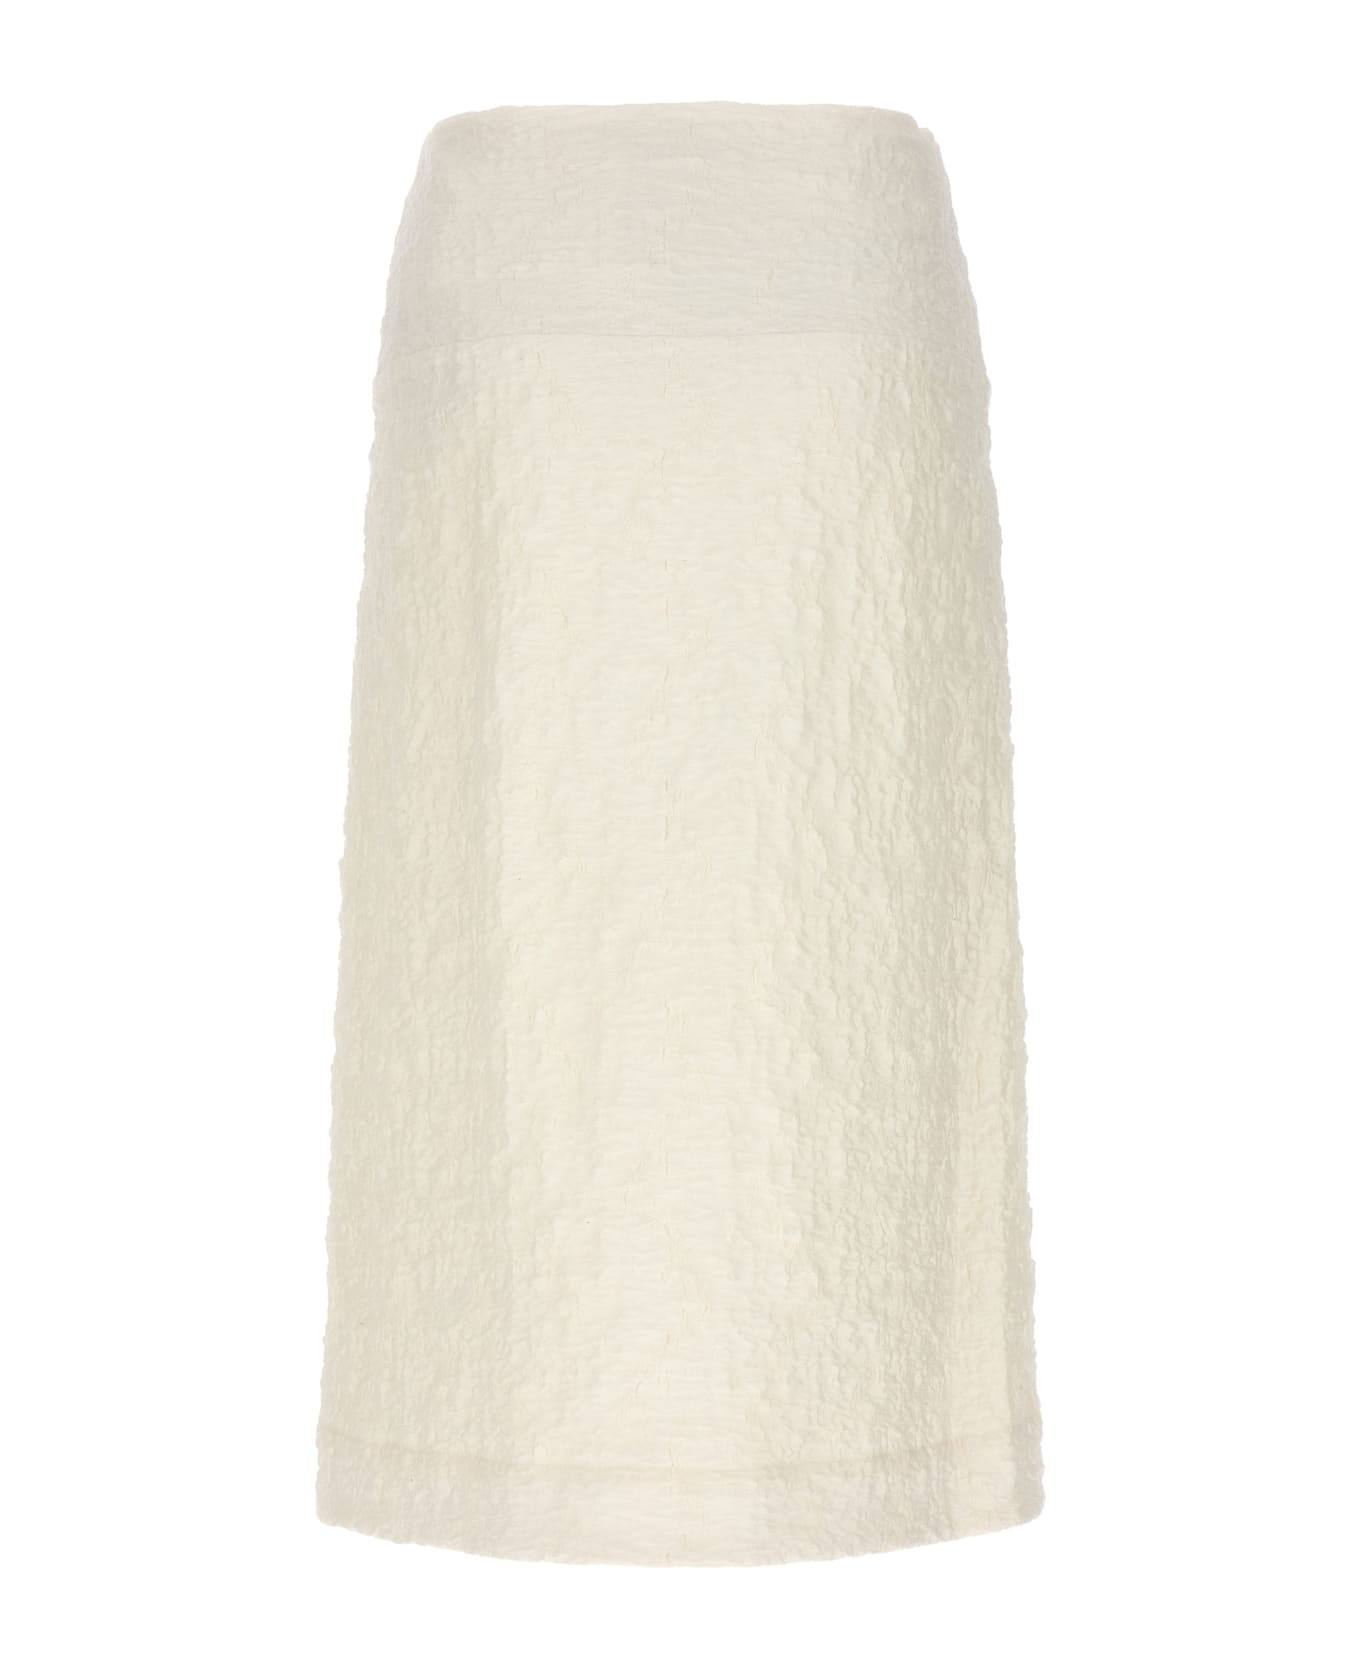 Jil Sander Embossed Cotton Skirt - White スカート